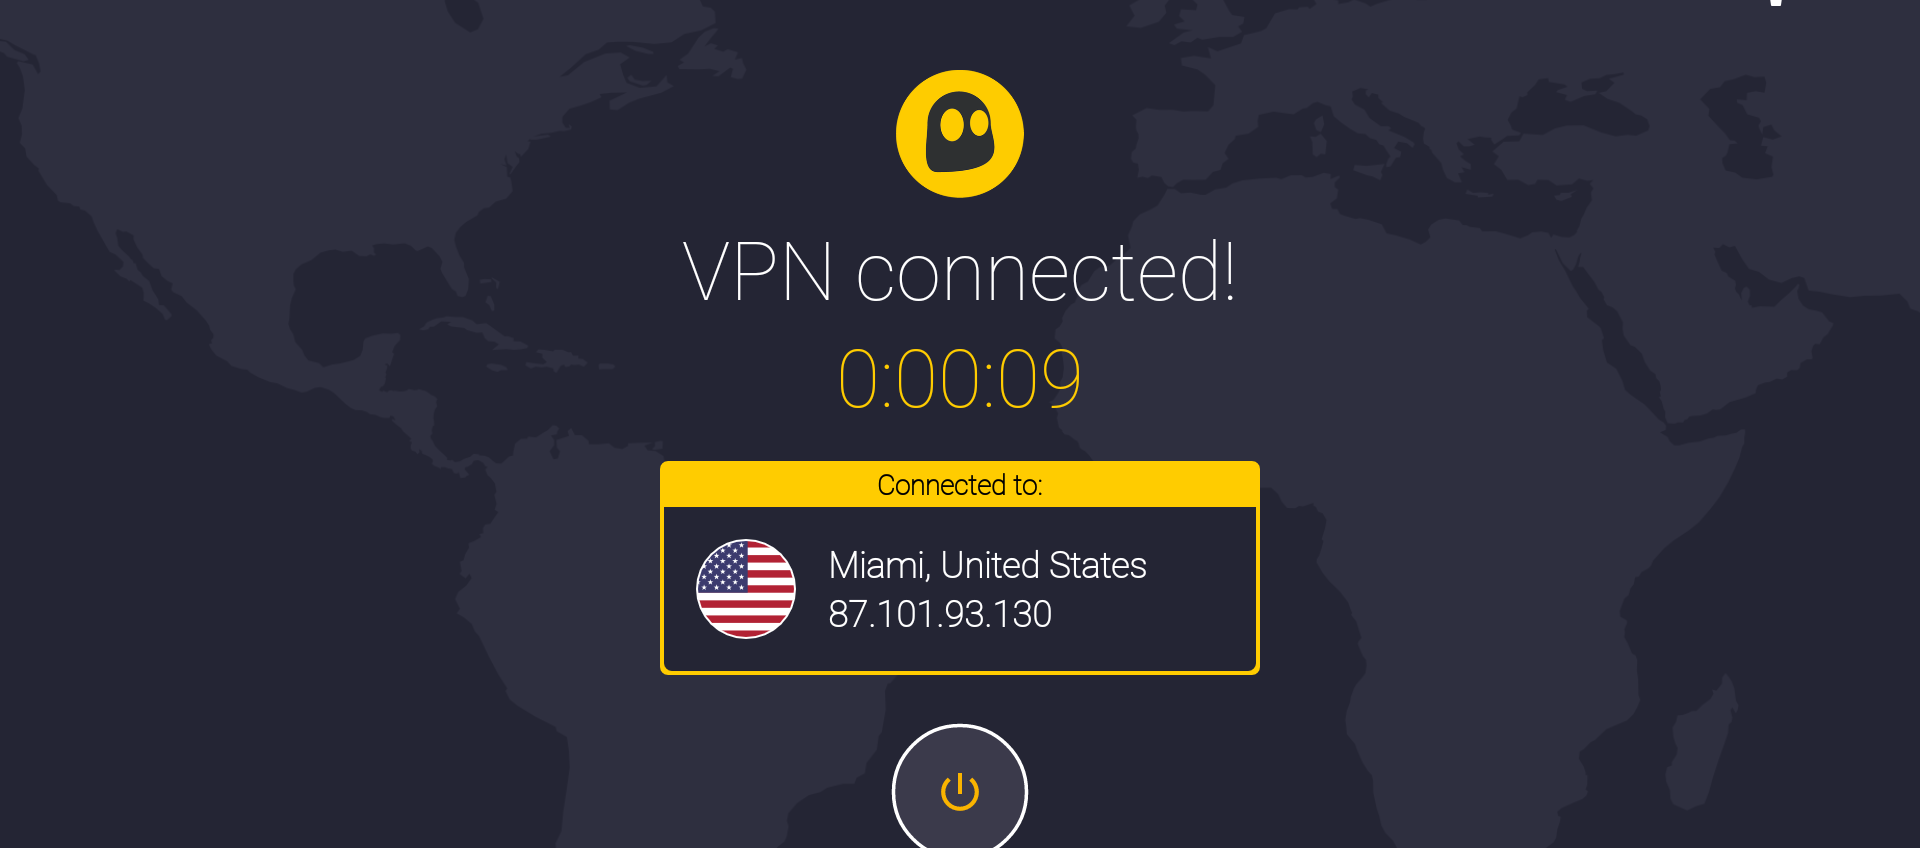 VPN sicura e veloce: ecco come scegliere quella giusta